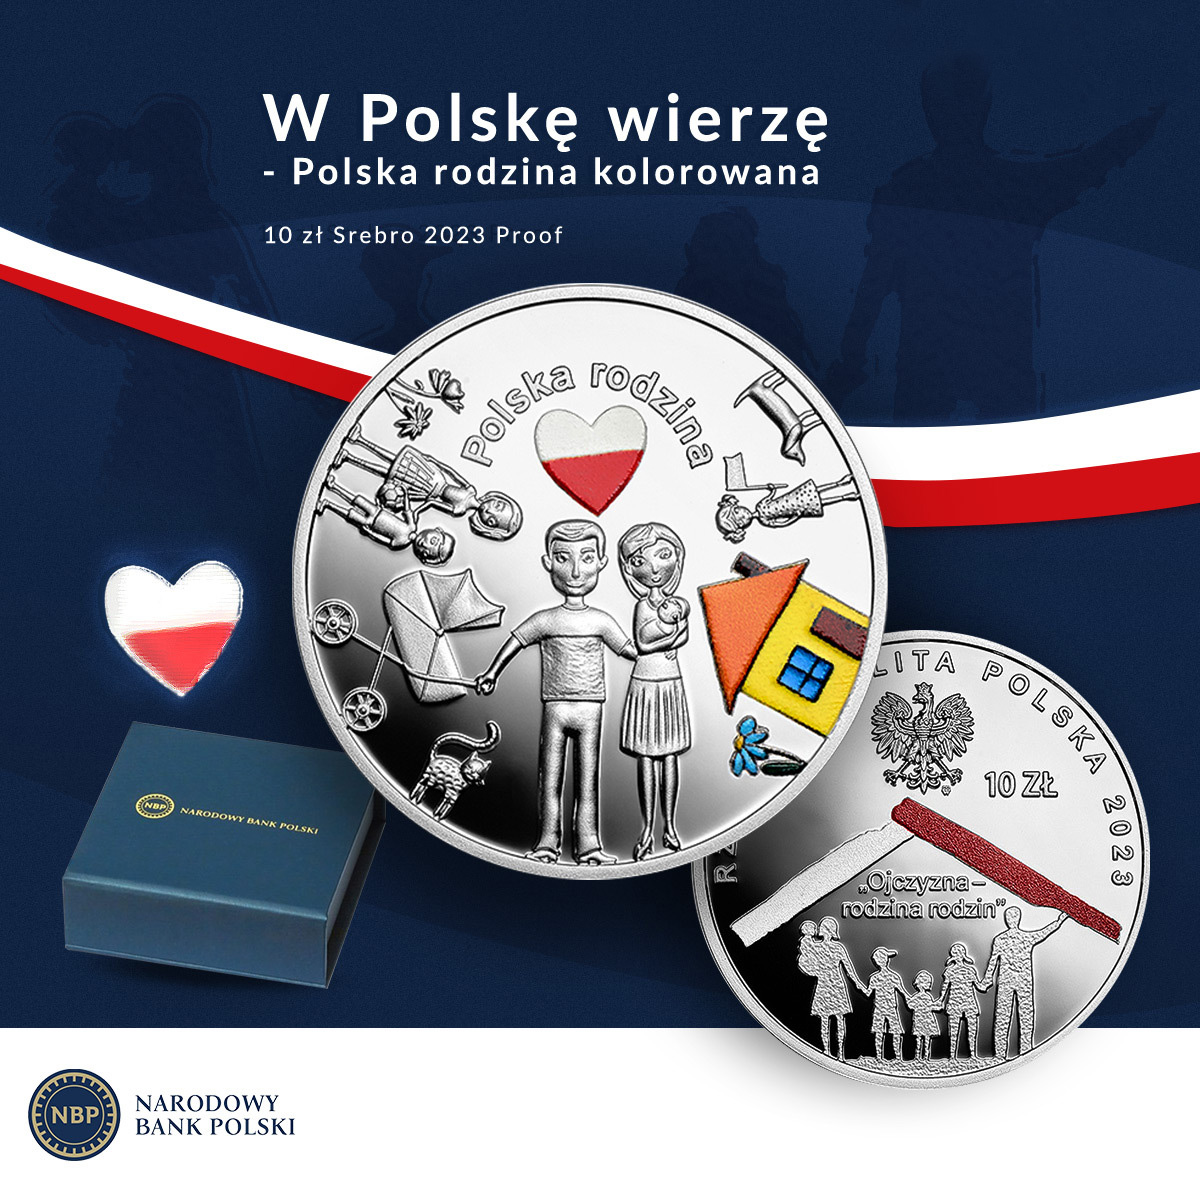 W Polskę wierzę - Polska rodzina